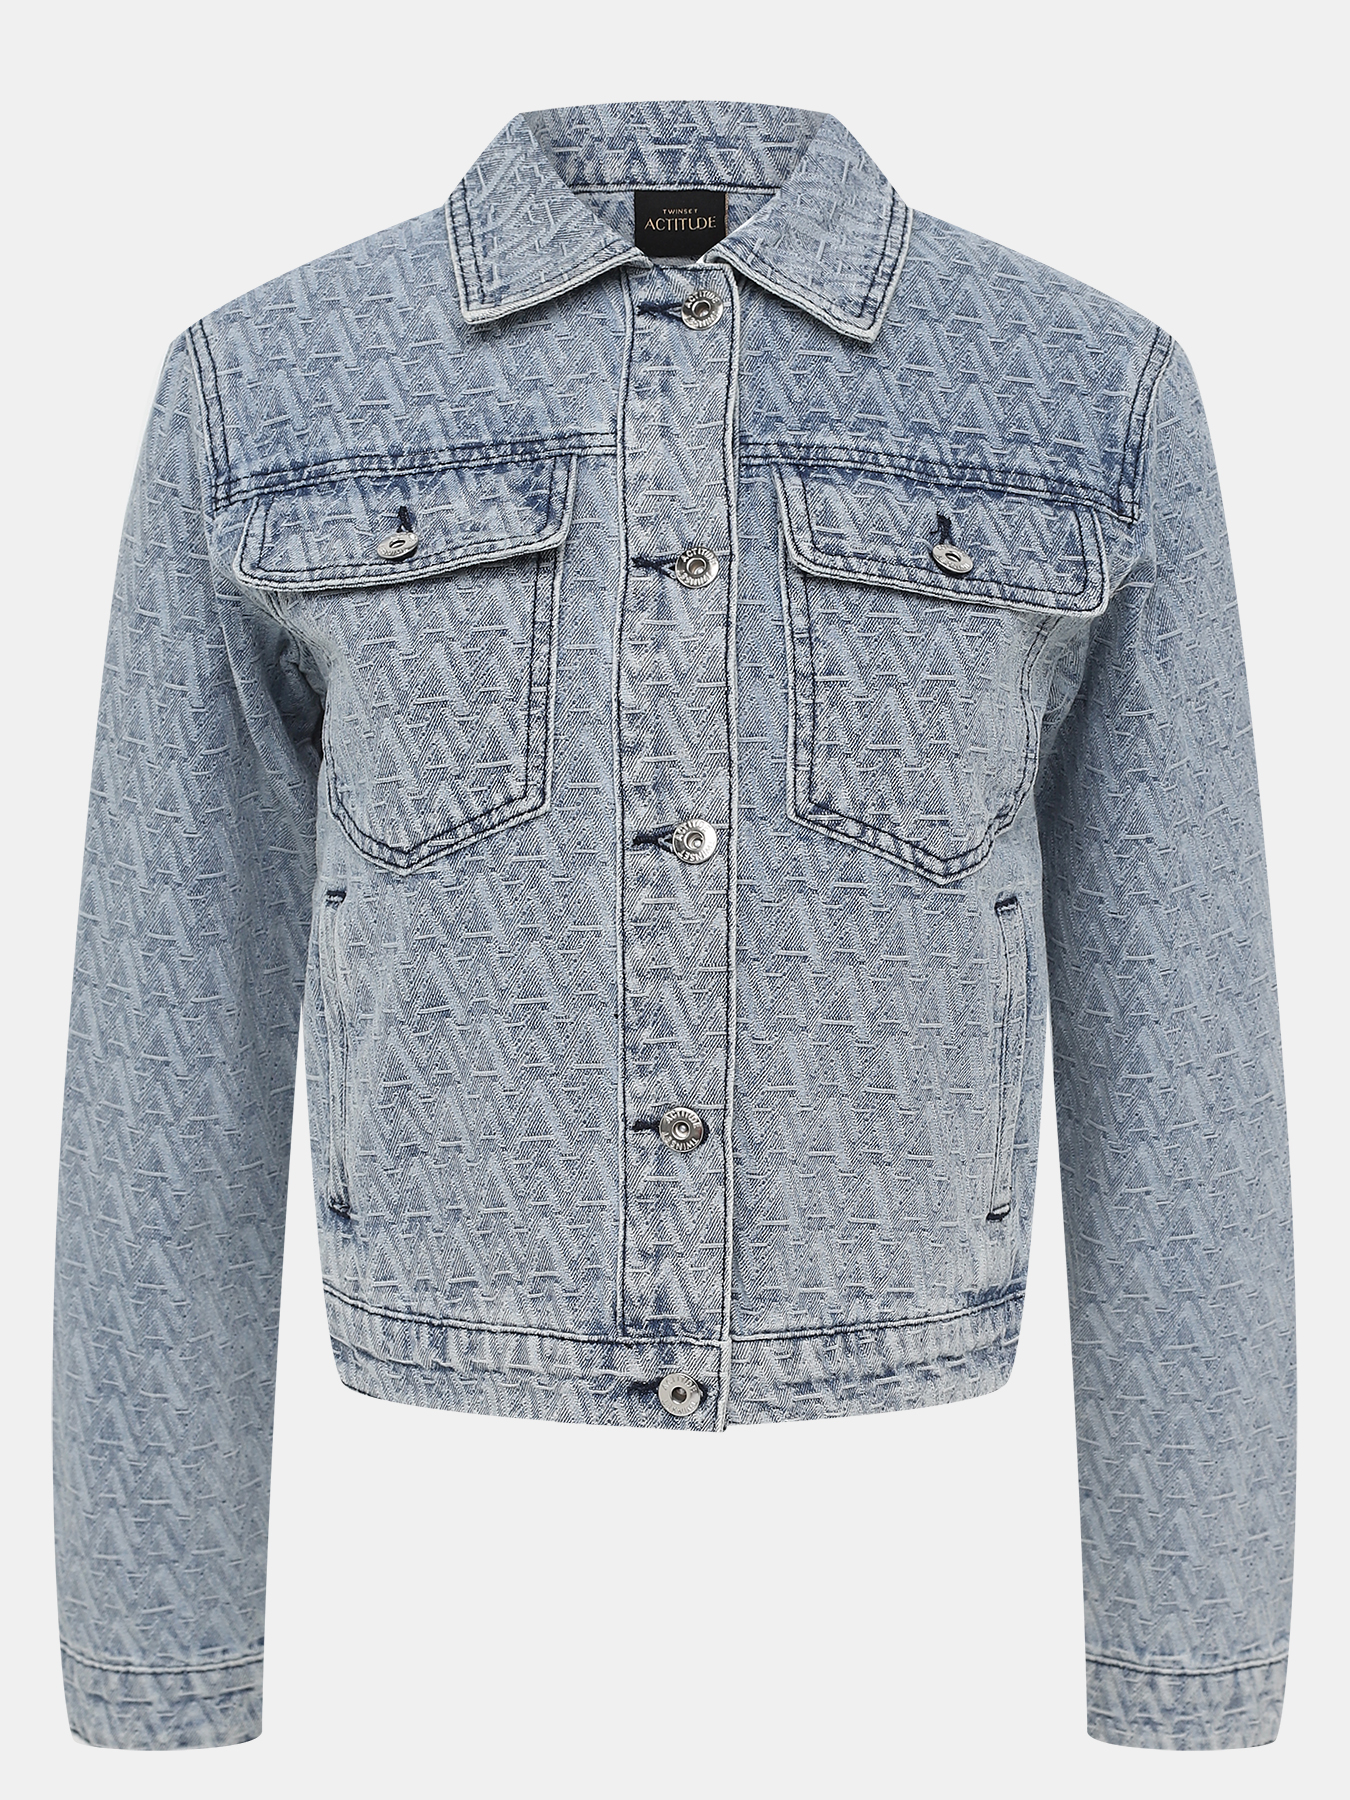 Джинсовая куртка TWINSET ACTITUDE 402258-042, цвет мультиколор, размер 42-44